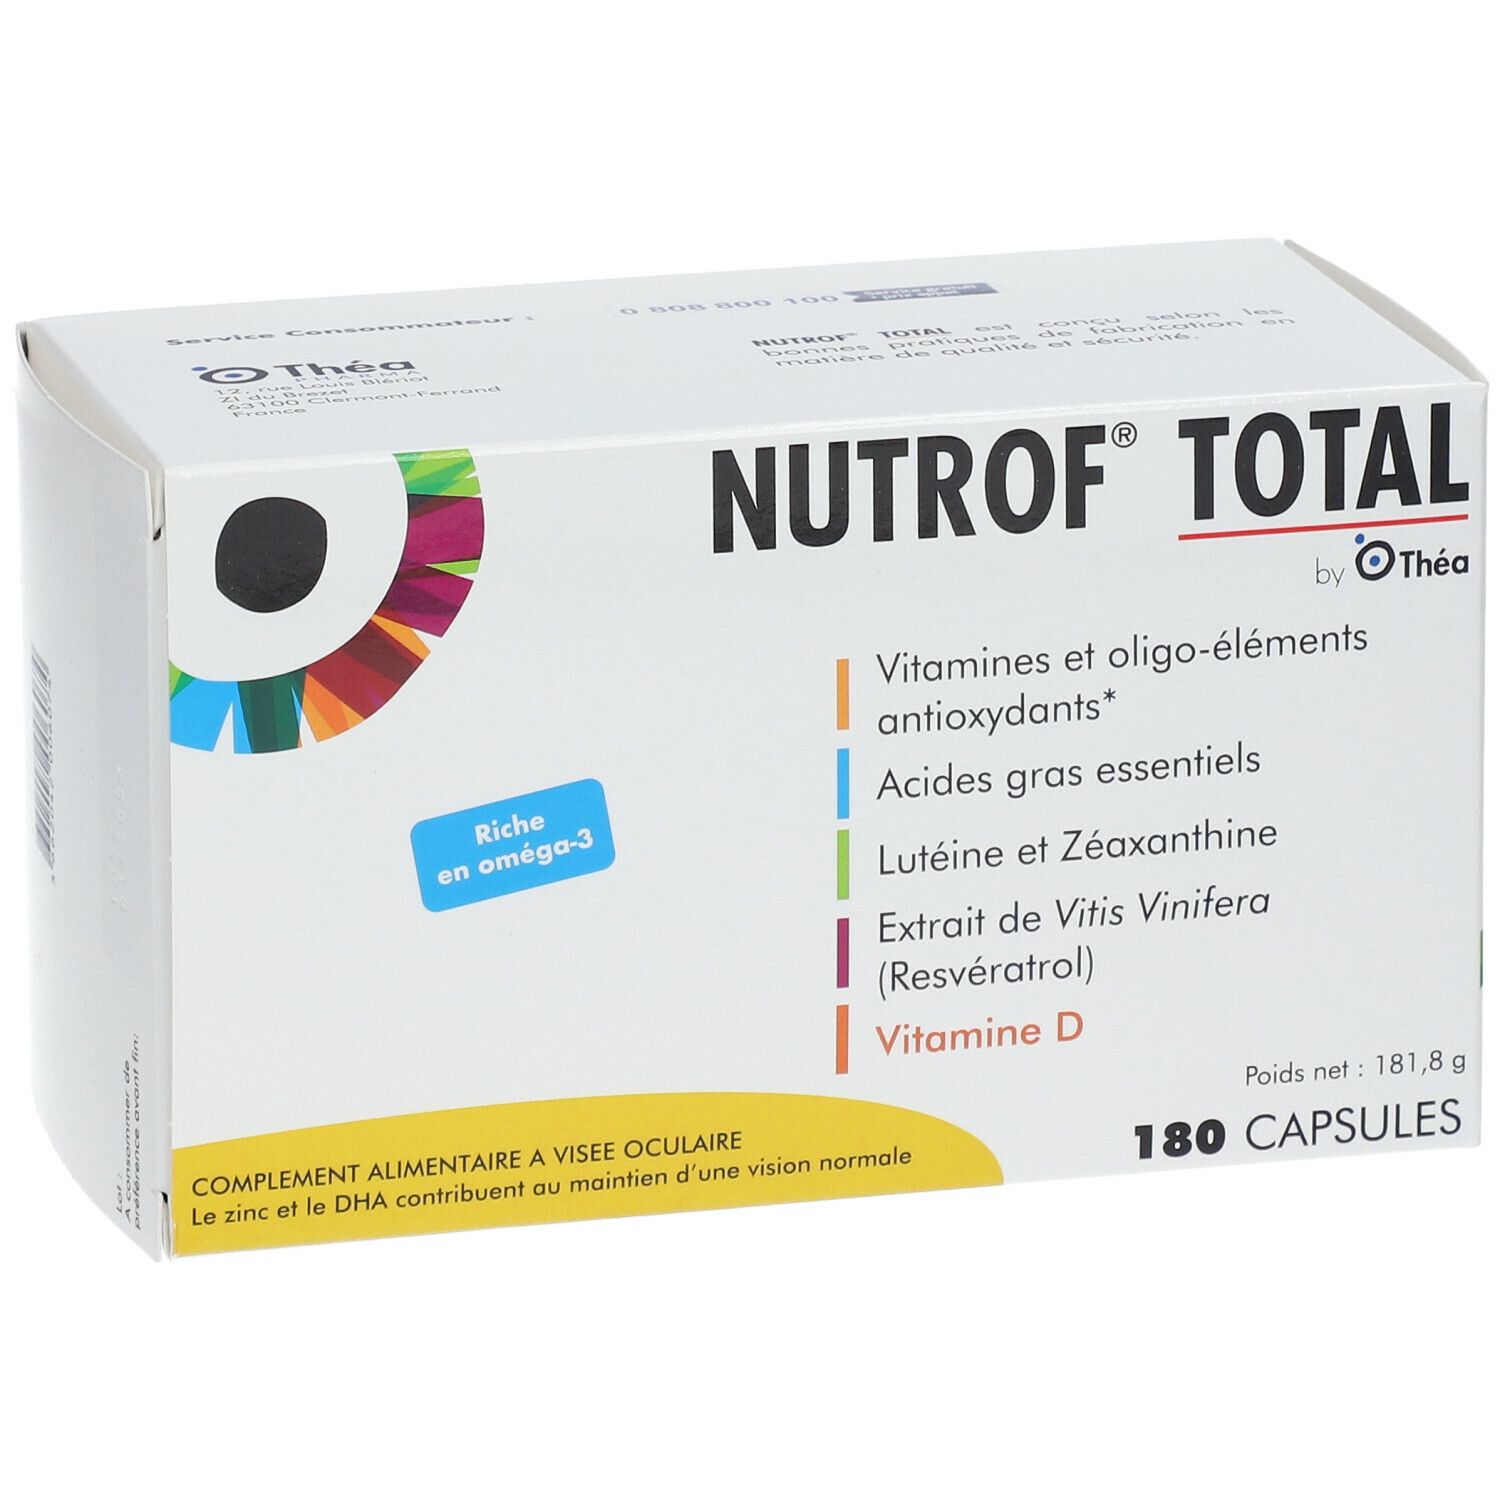 Nutrof® Total